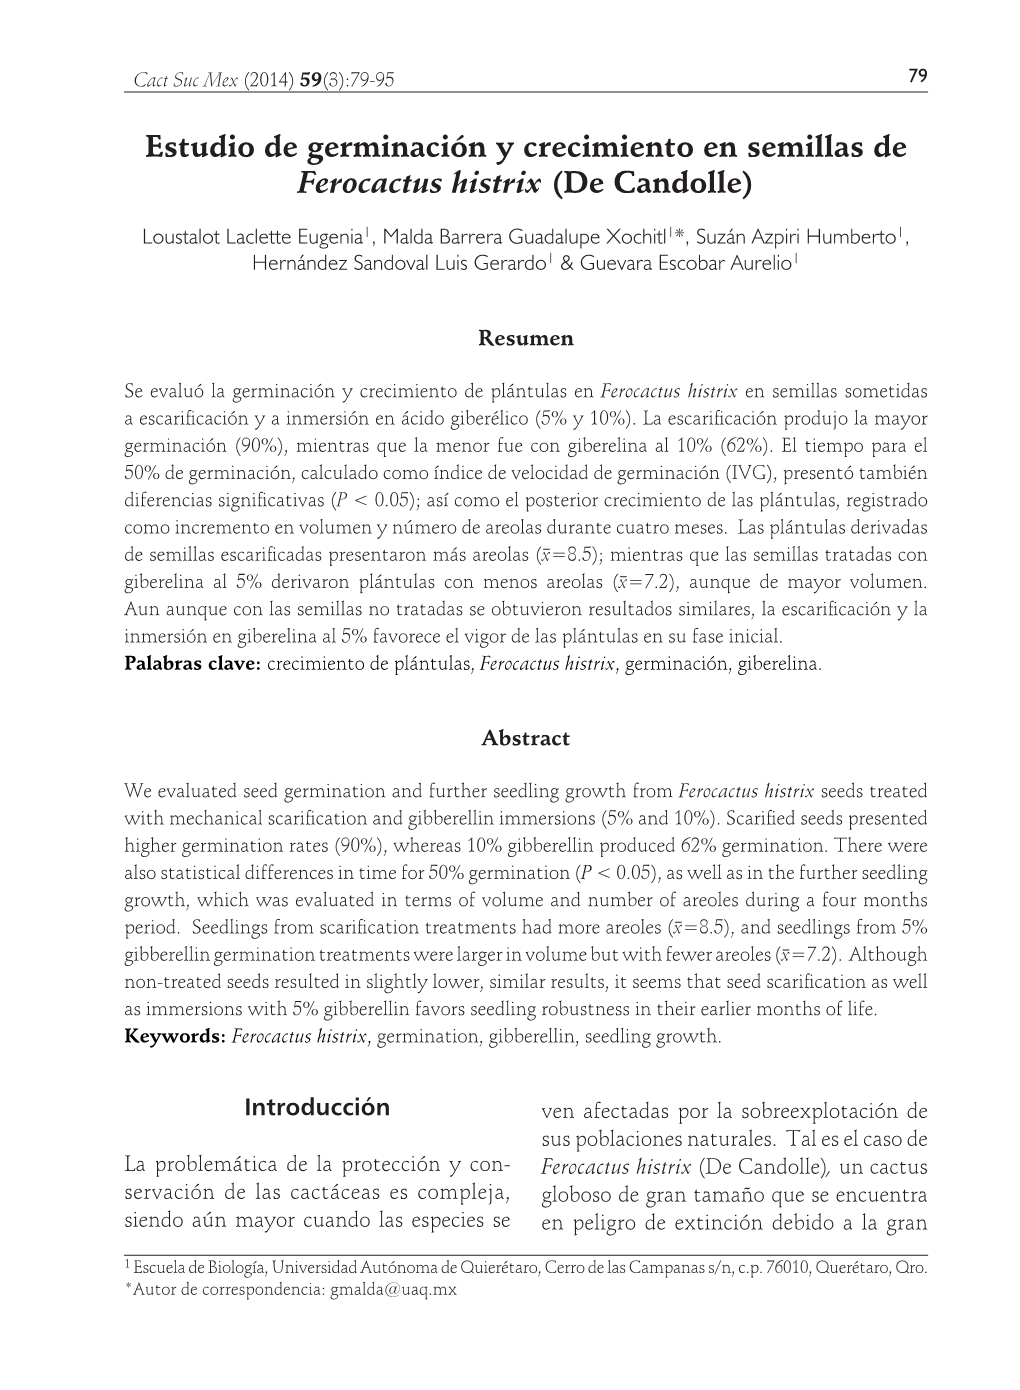 Estudio De Germinación Y Crecimiento En Semillas De Ferocactus Histrix (De Candolle)